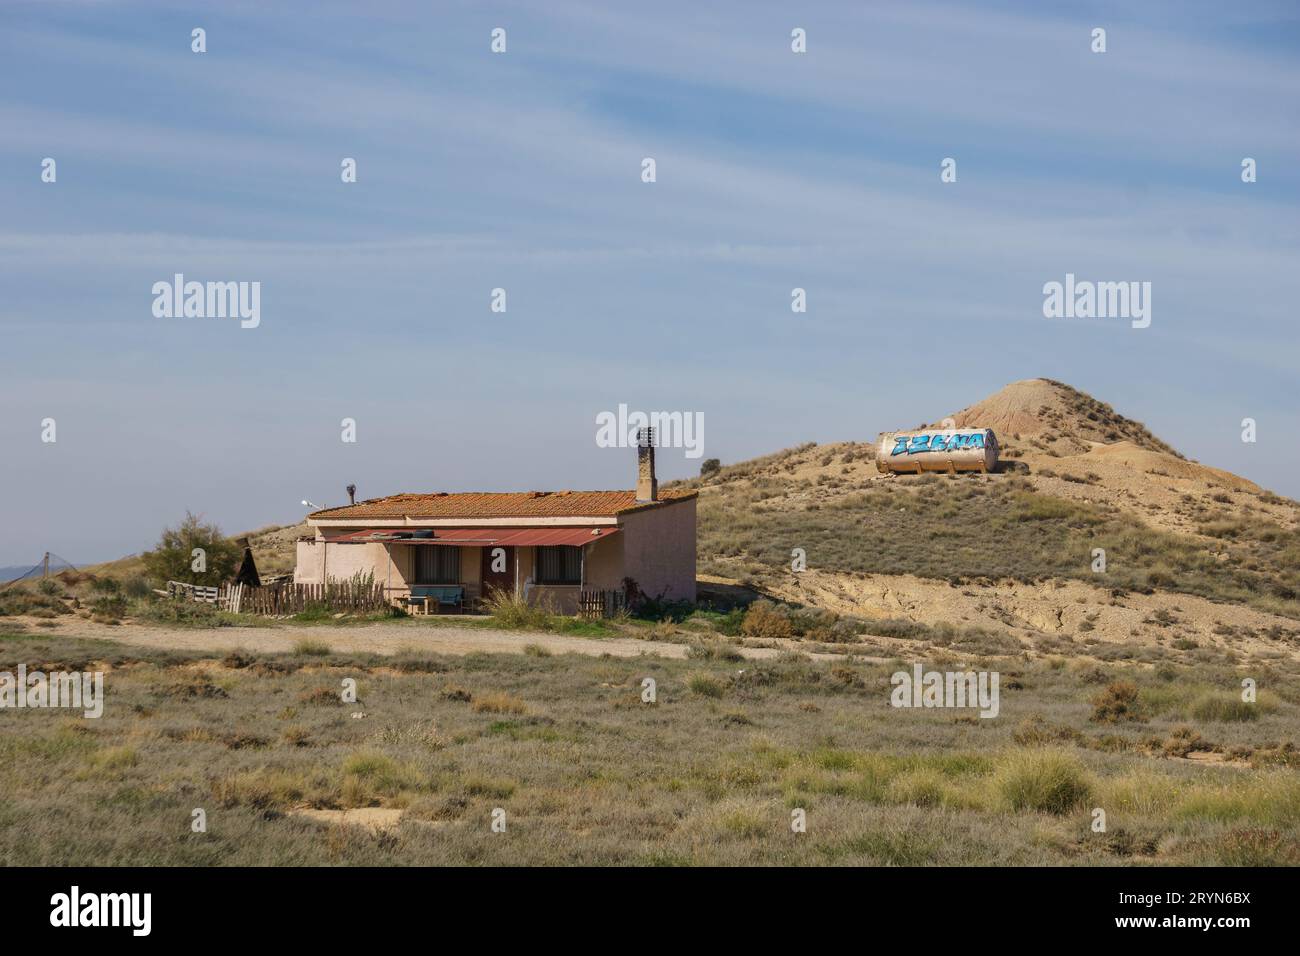 Bâtiment solitaire au paysage désertique du plateau aride des Bardenas Reales, Arguedas, Navarre, Espagne Banque D'Images